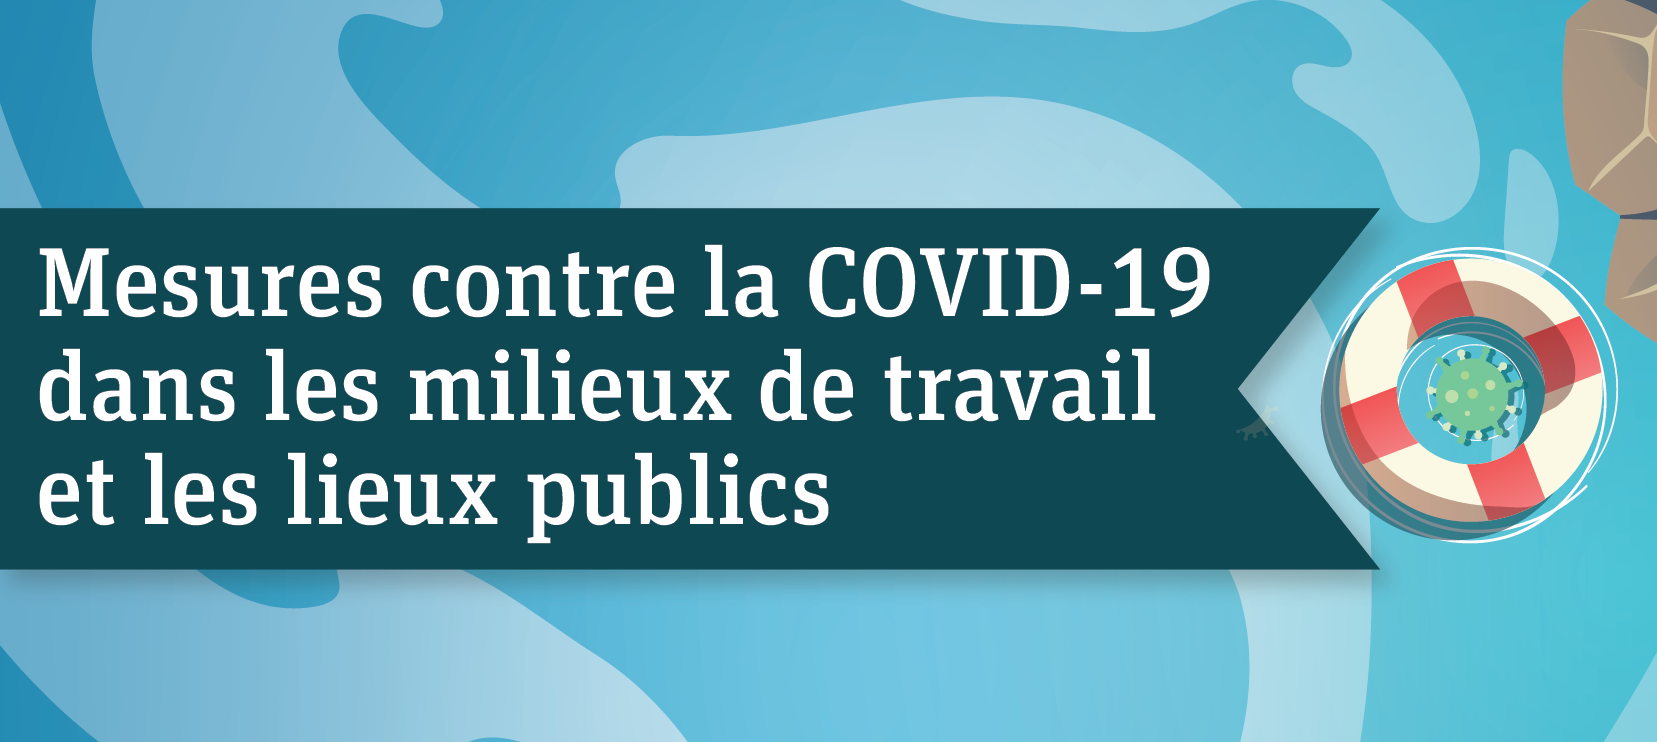 Mesures contre la COVID-19 dans les milieux de travail et les lieux publics 